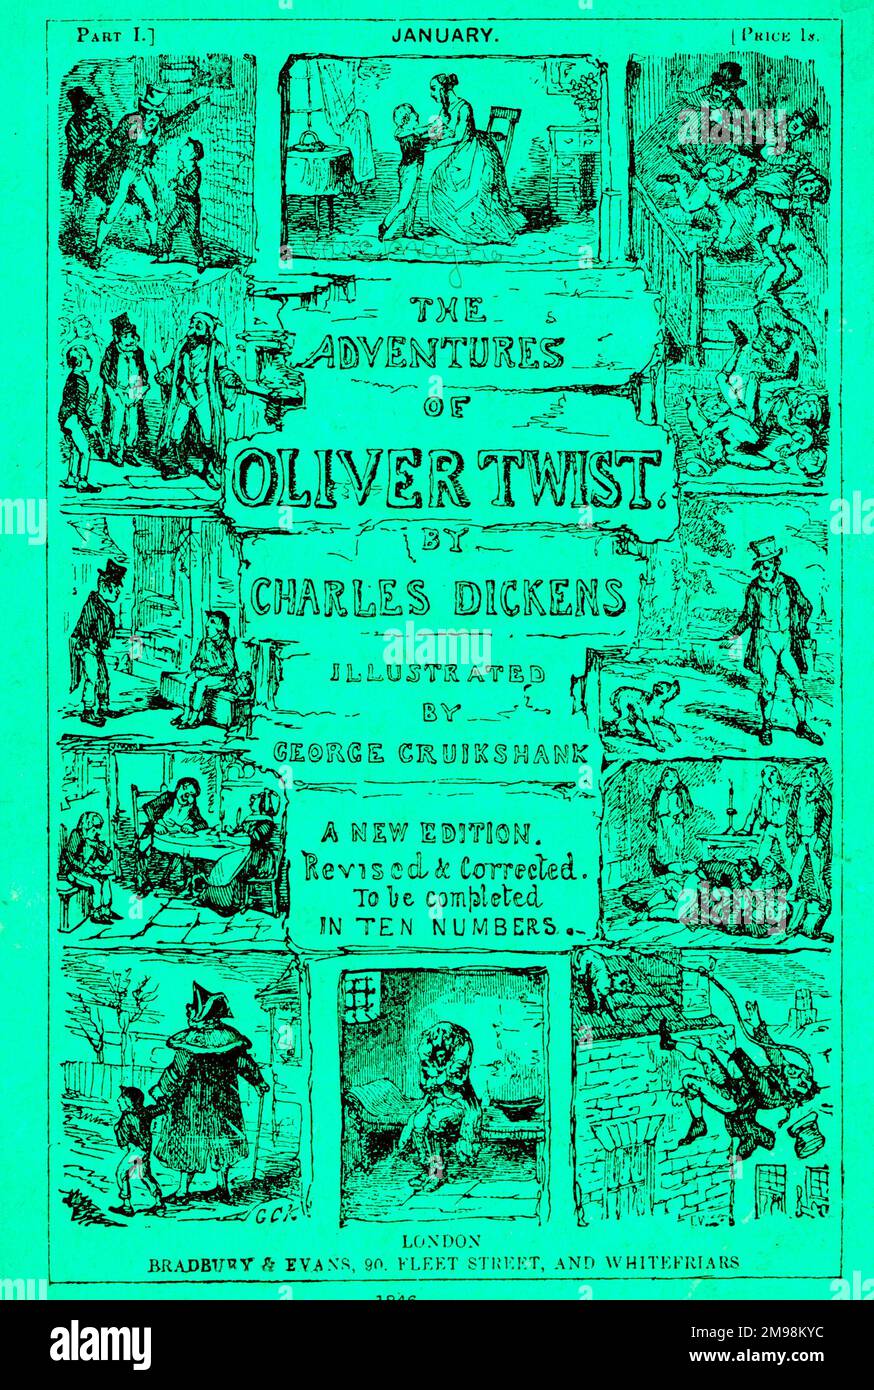 Wrapper Design, erste Monatsausgabe des Romans Oliver Twist von Charles Dickens, mit Illustrationen von George Cruikshank, vom Januar 1846. Stockfoto